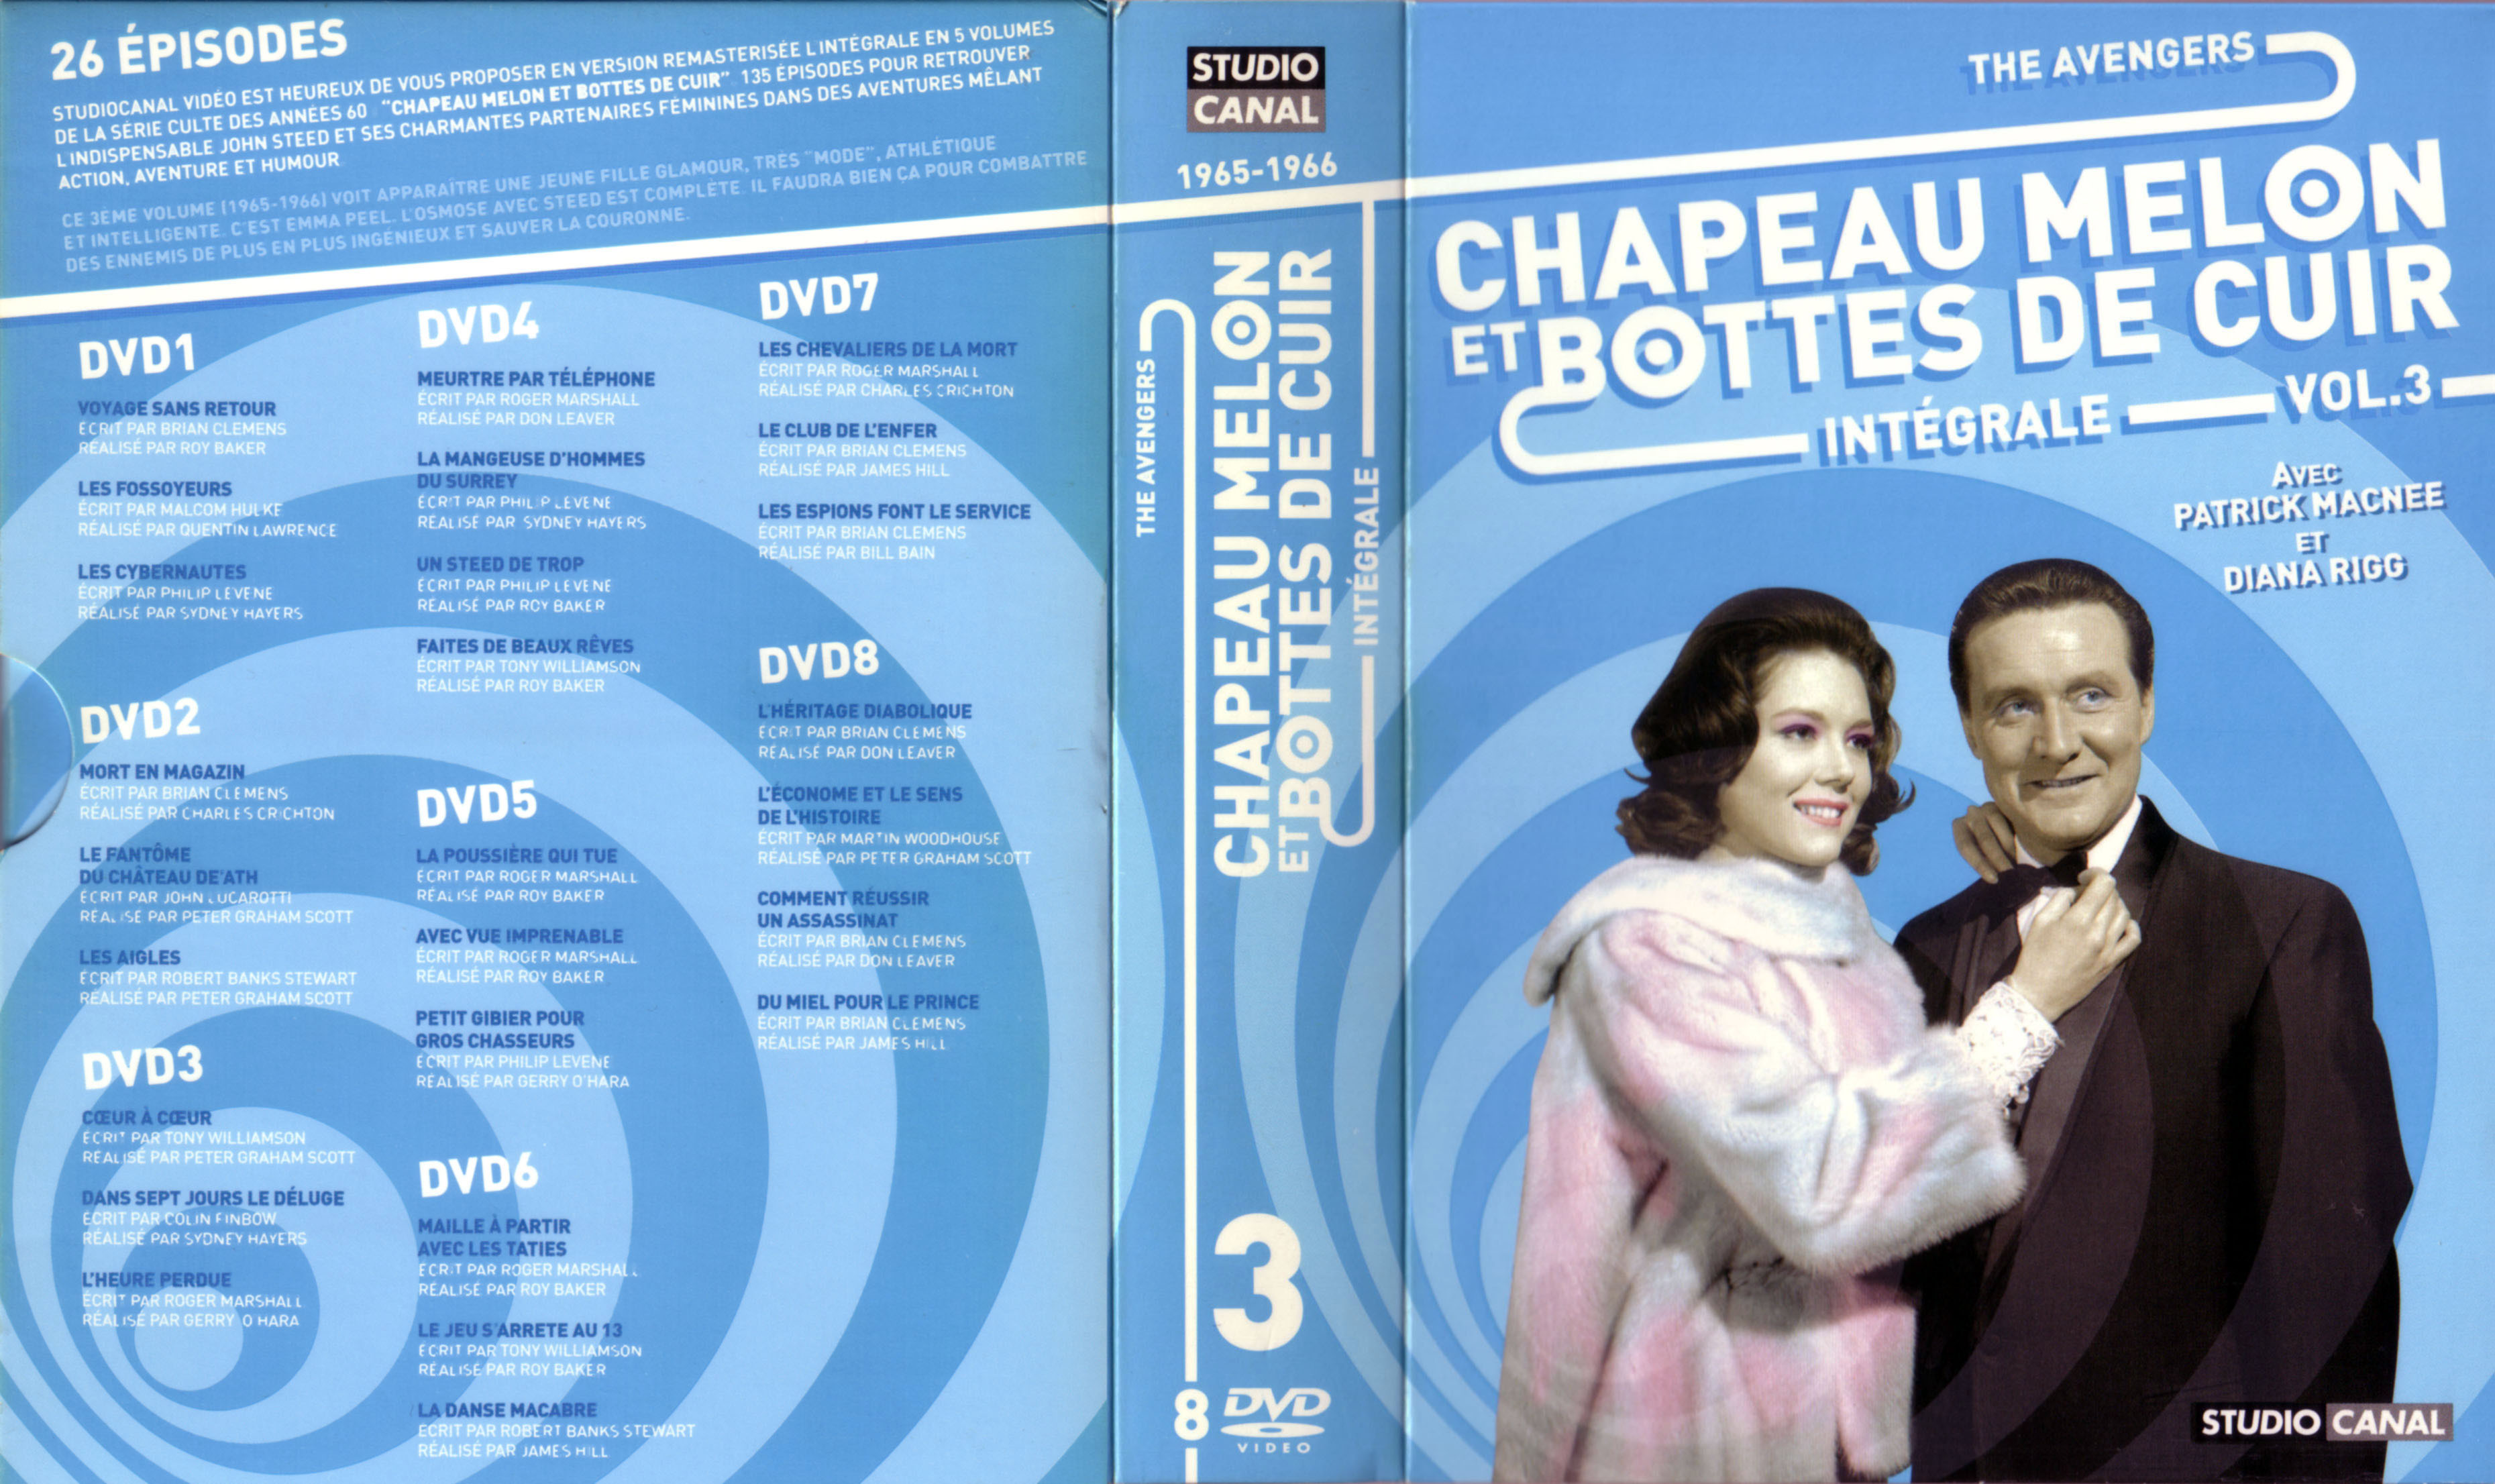 Jaquette DVD Chapeau melon et bottes de cuir Integrale vol 03